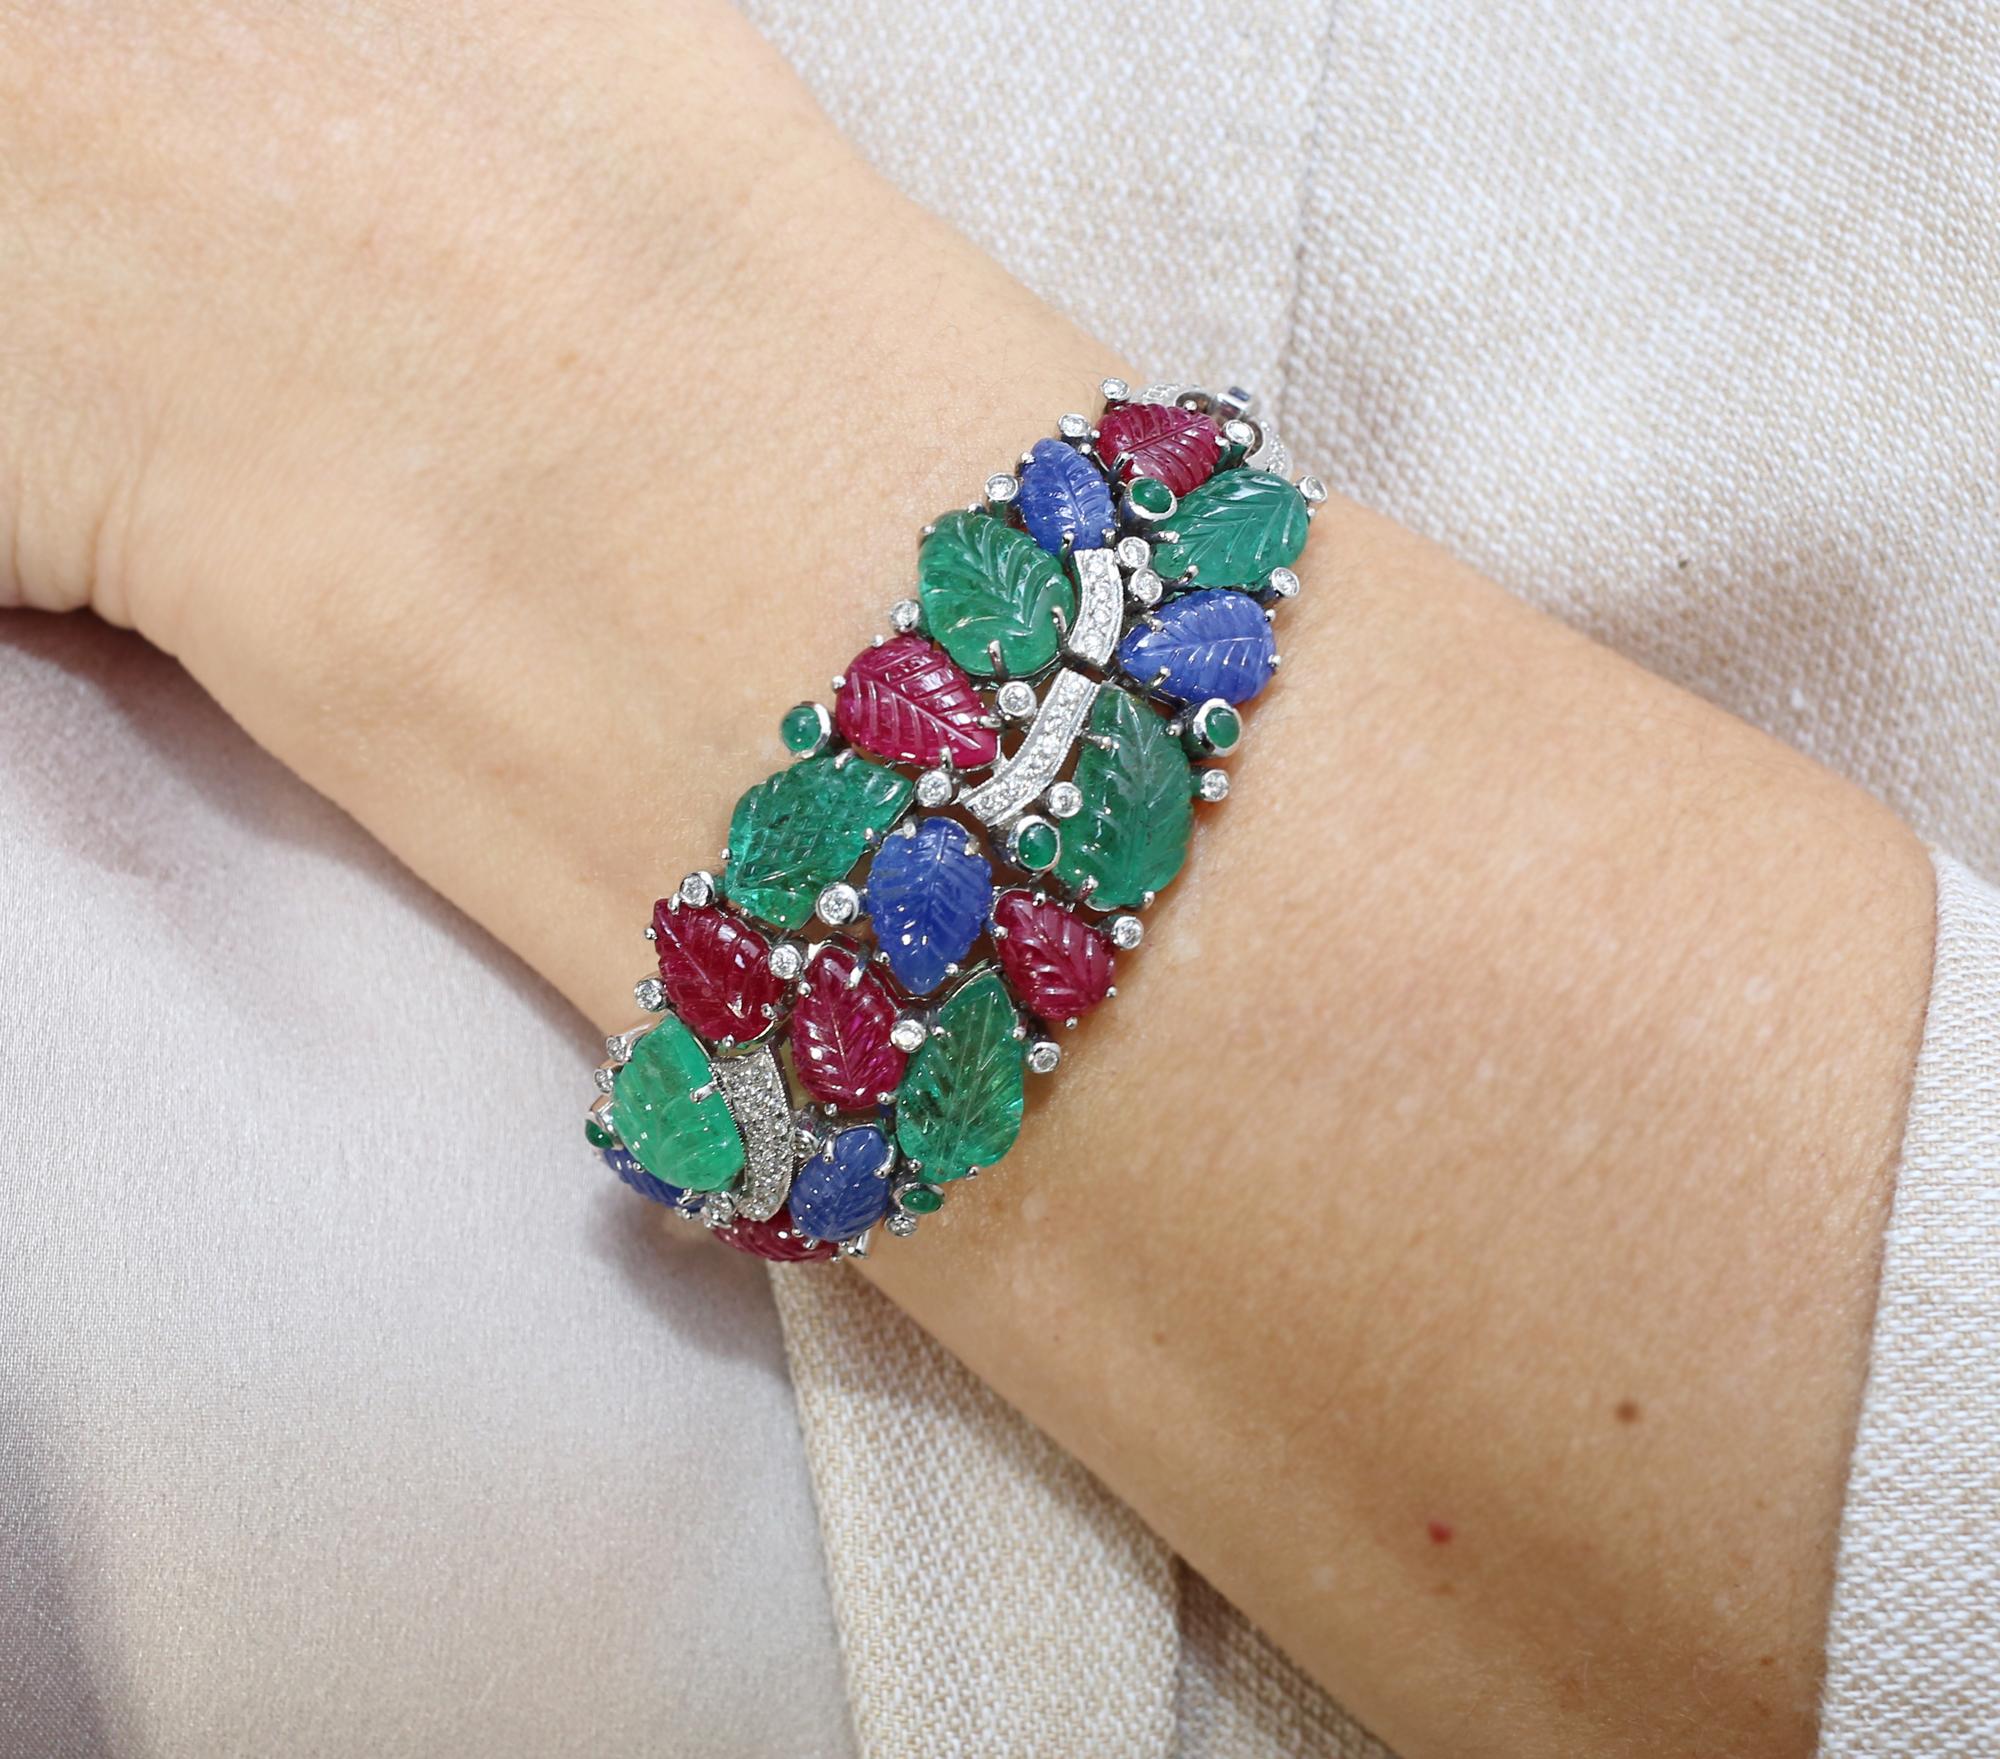 Tutti-Frutti-Armband Rubine Saphire Smaragde Diamanten 18 K Gold.
Ein elegantes Tutti-Frutti-Armband im Stil des Art déco. Rubine, Saphire, Smaragde.
Dieser Artikel ist eine moderne, 1996 entstandene Interpretation der großen Idee. Das Armband